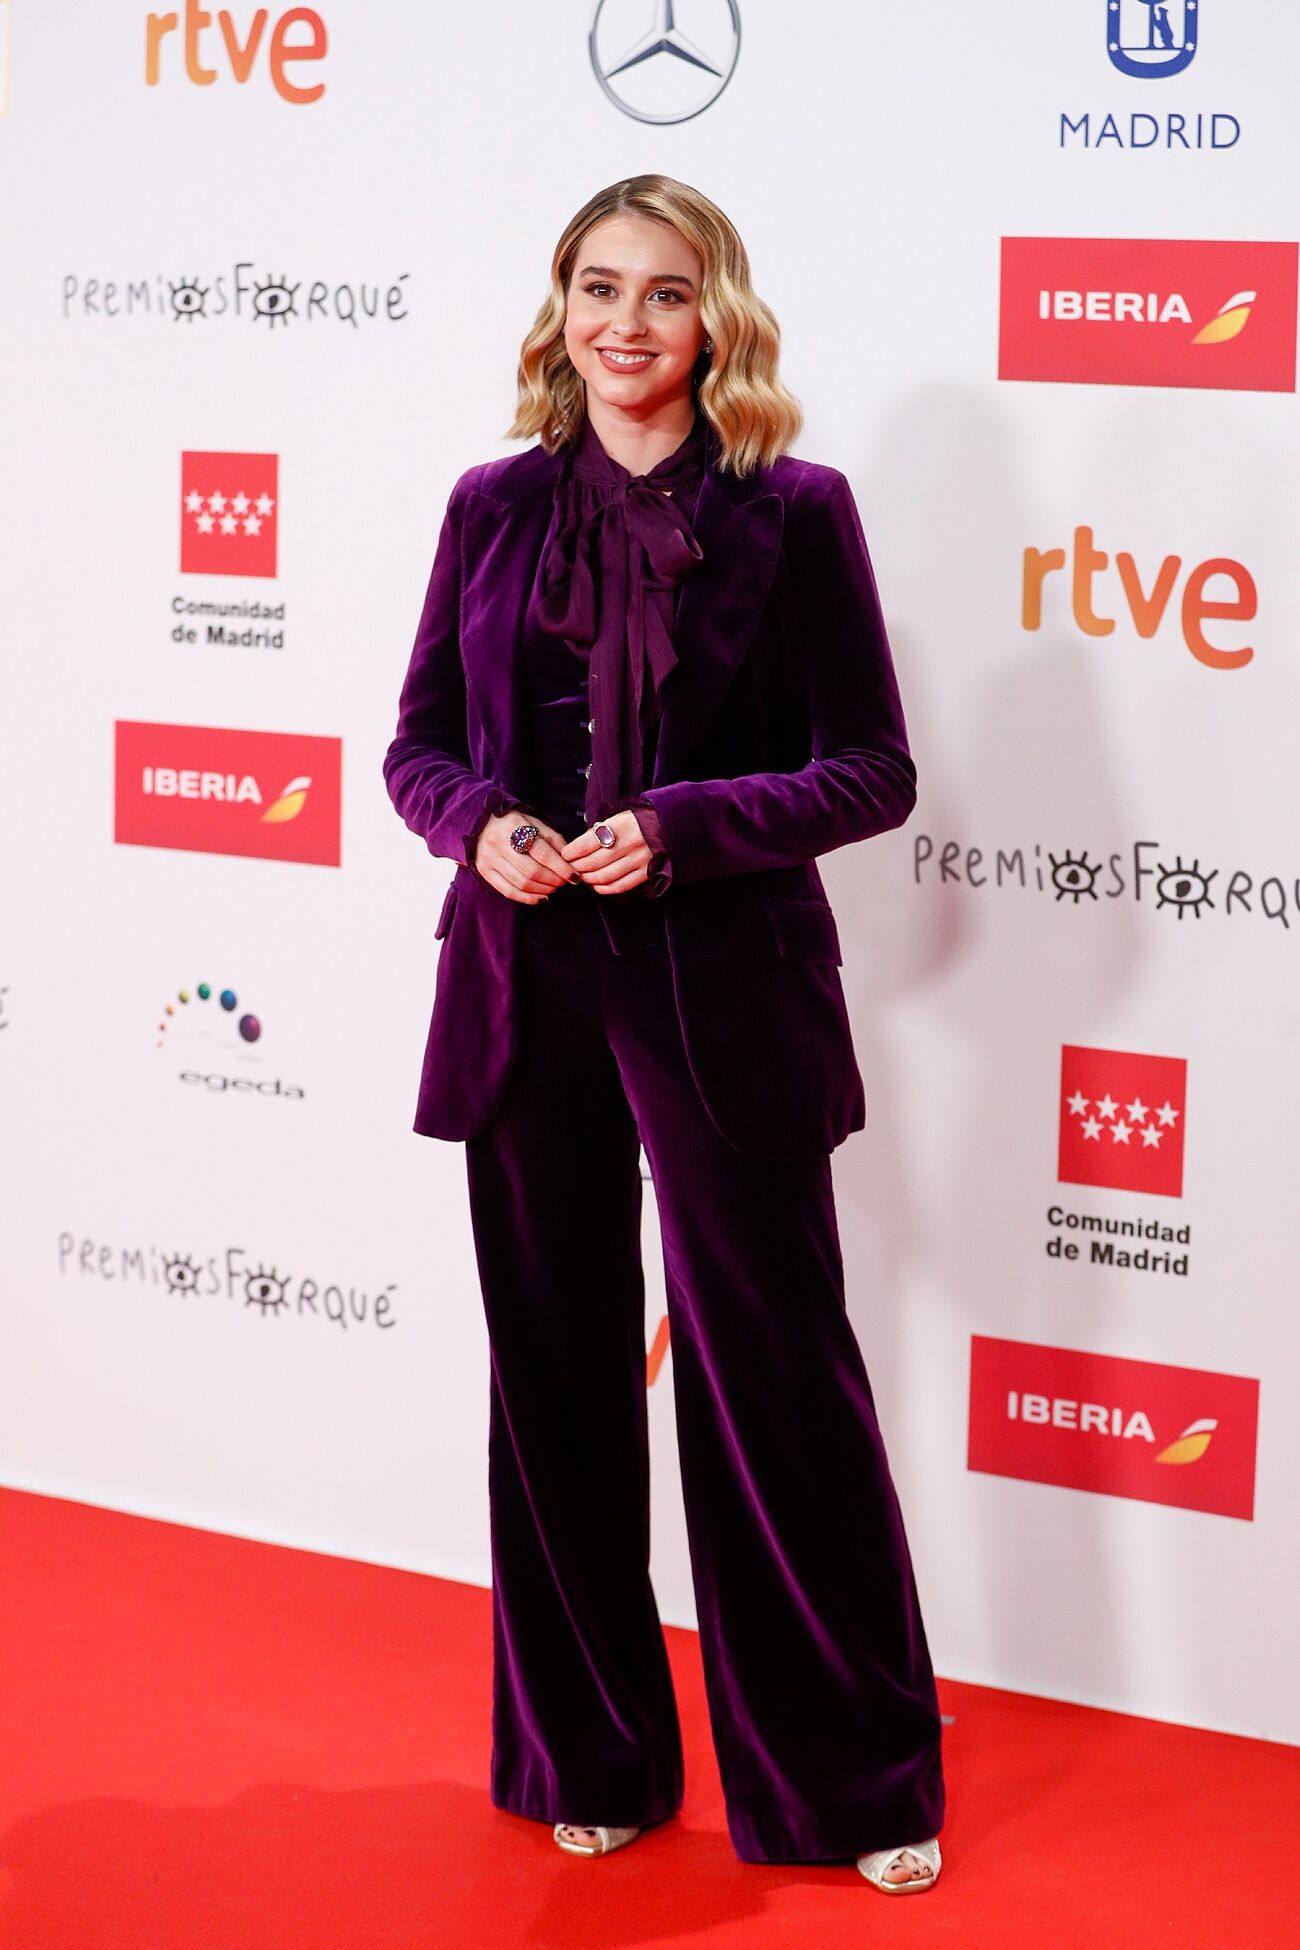 Premios Forqué 2021: todos los looks de la alfombra roja